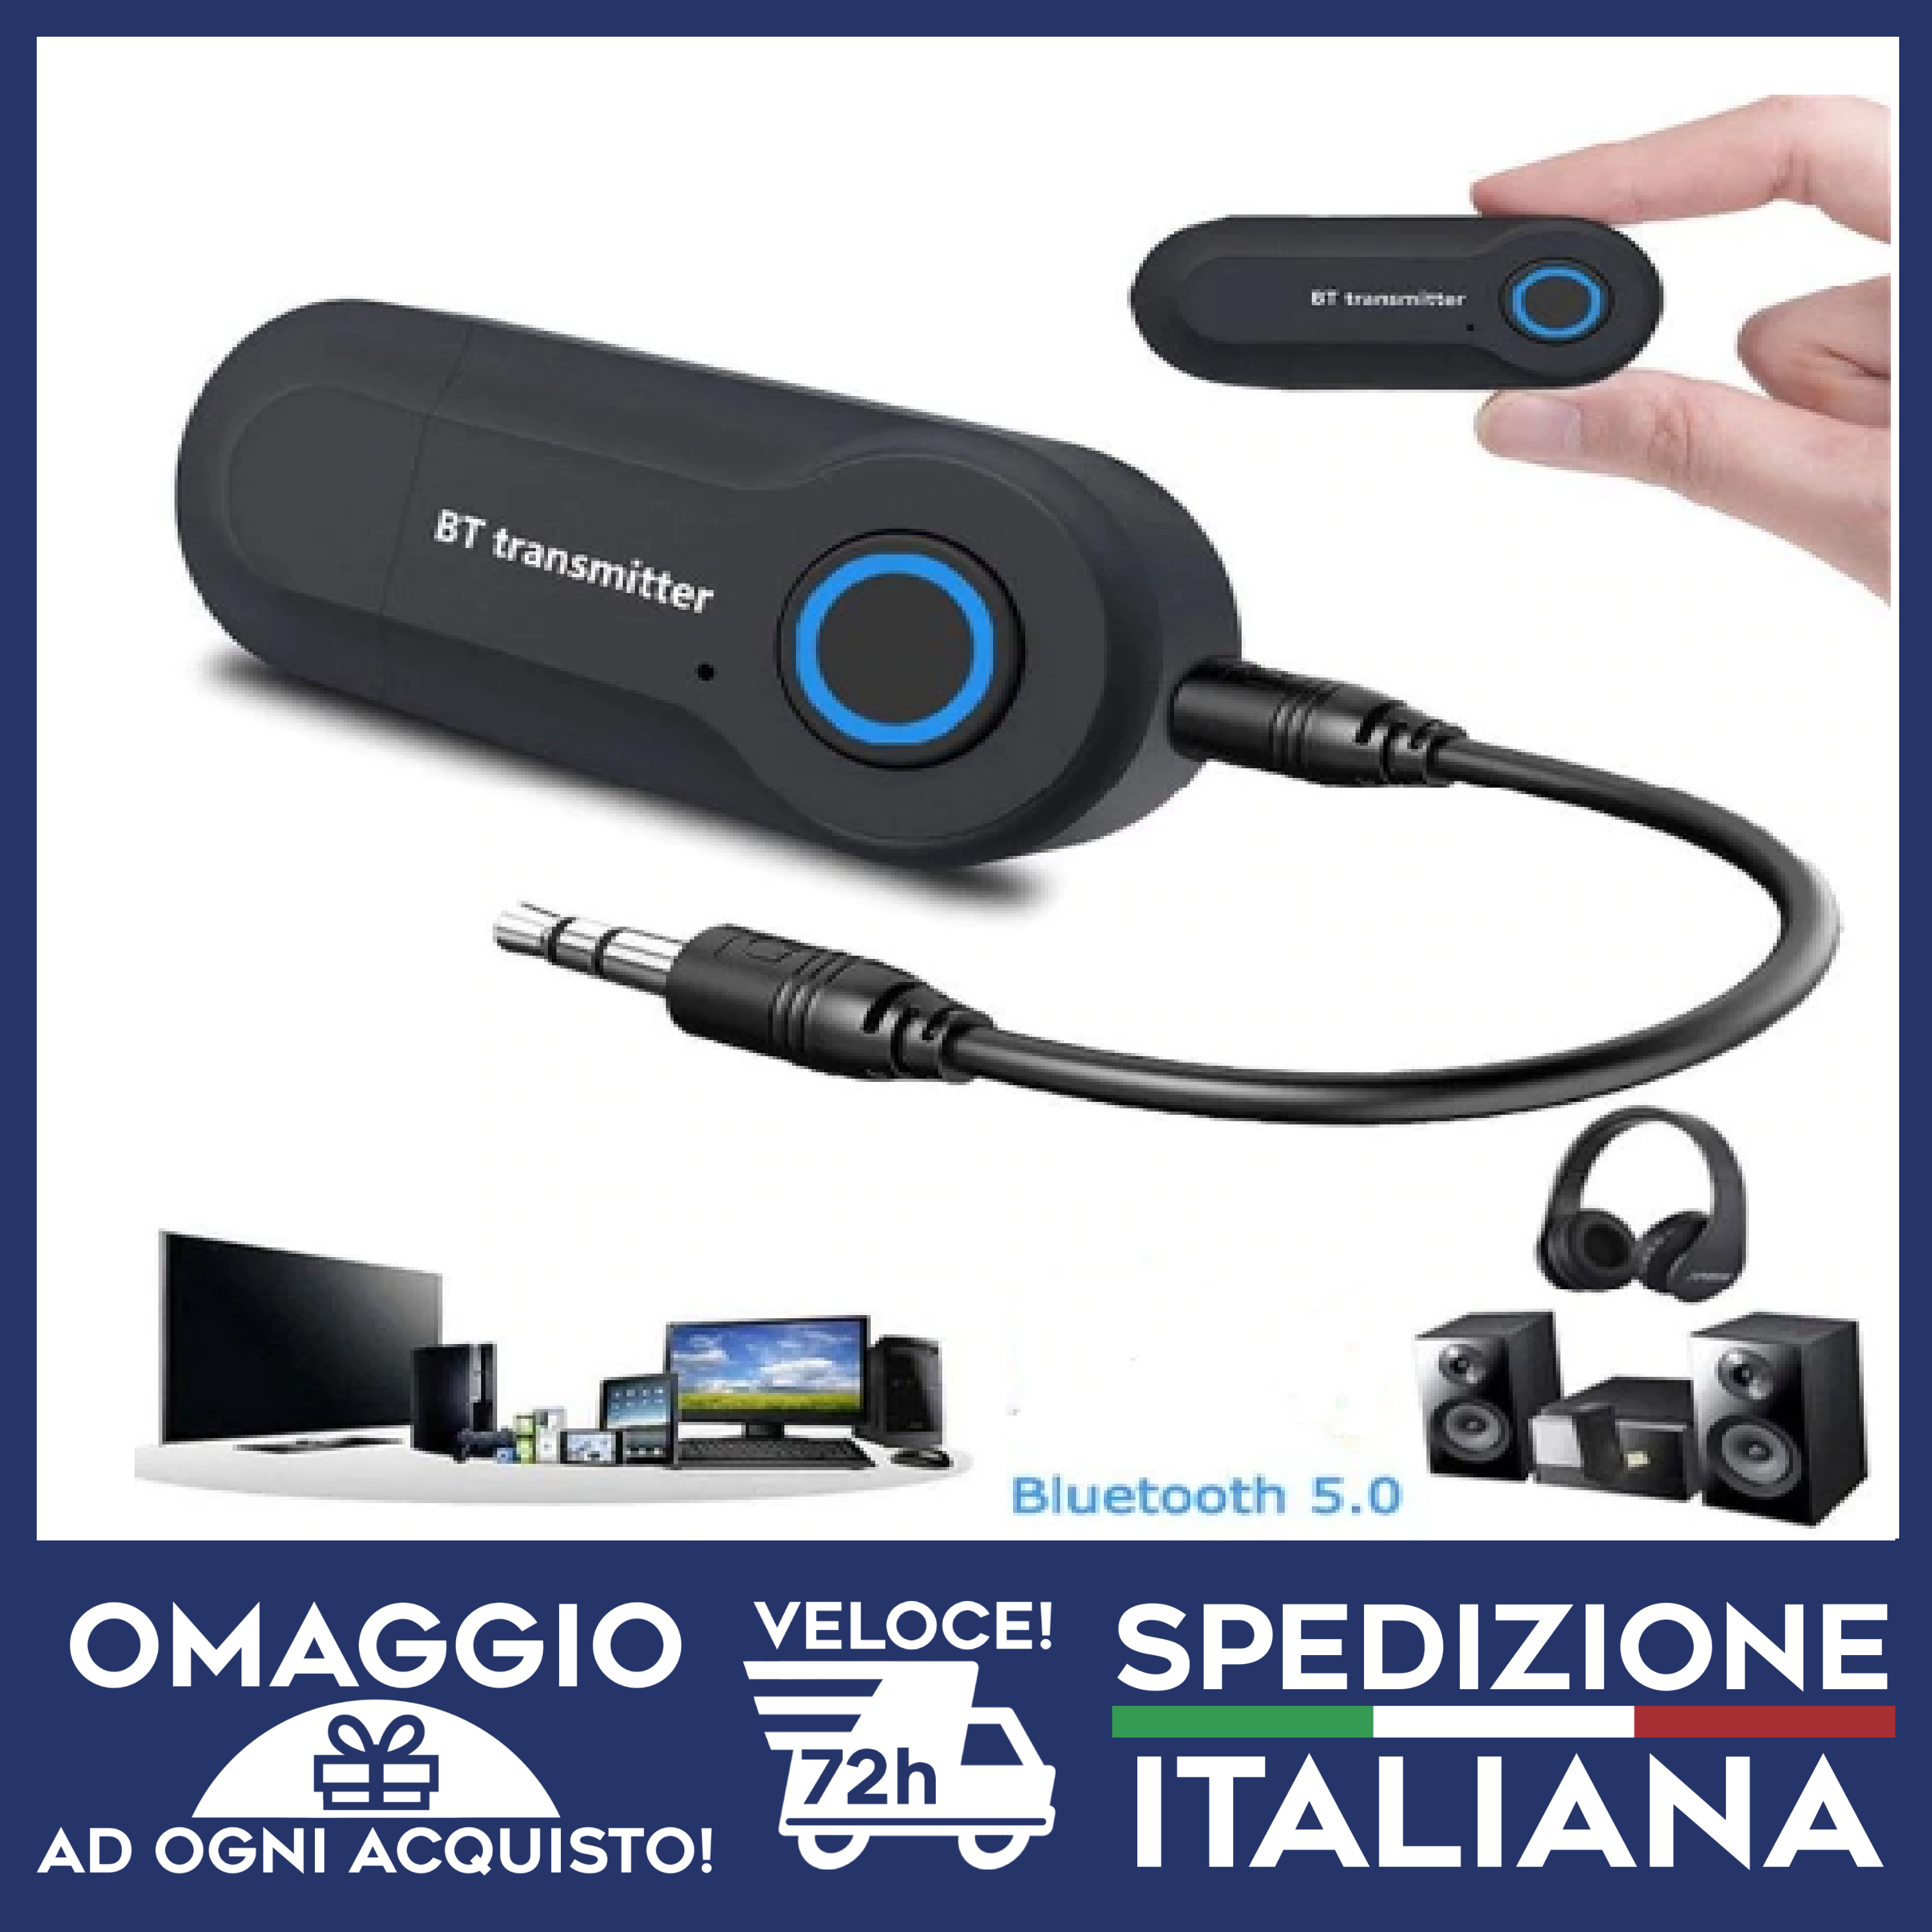 Trasmettitore Bluetooth per TV per cuffie e auri - Audio/Video In vendita a  Palermo